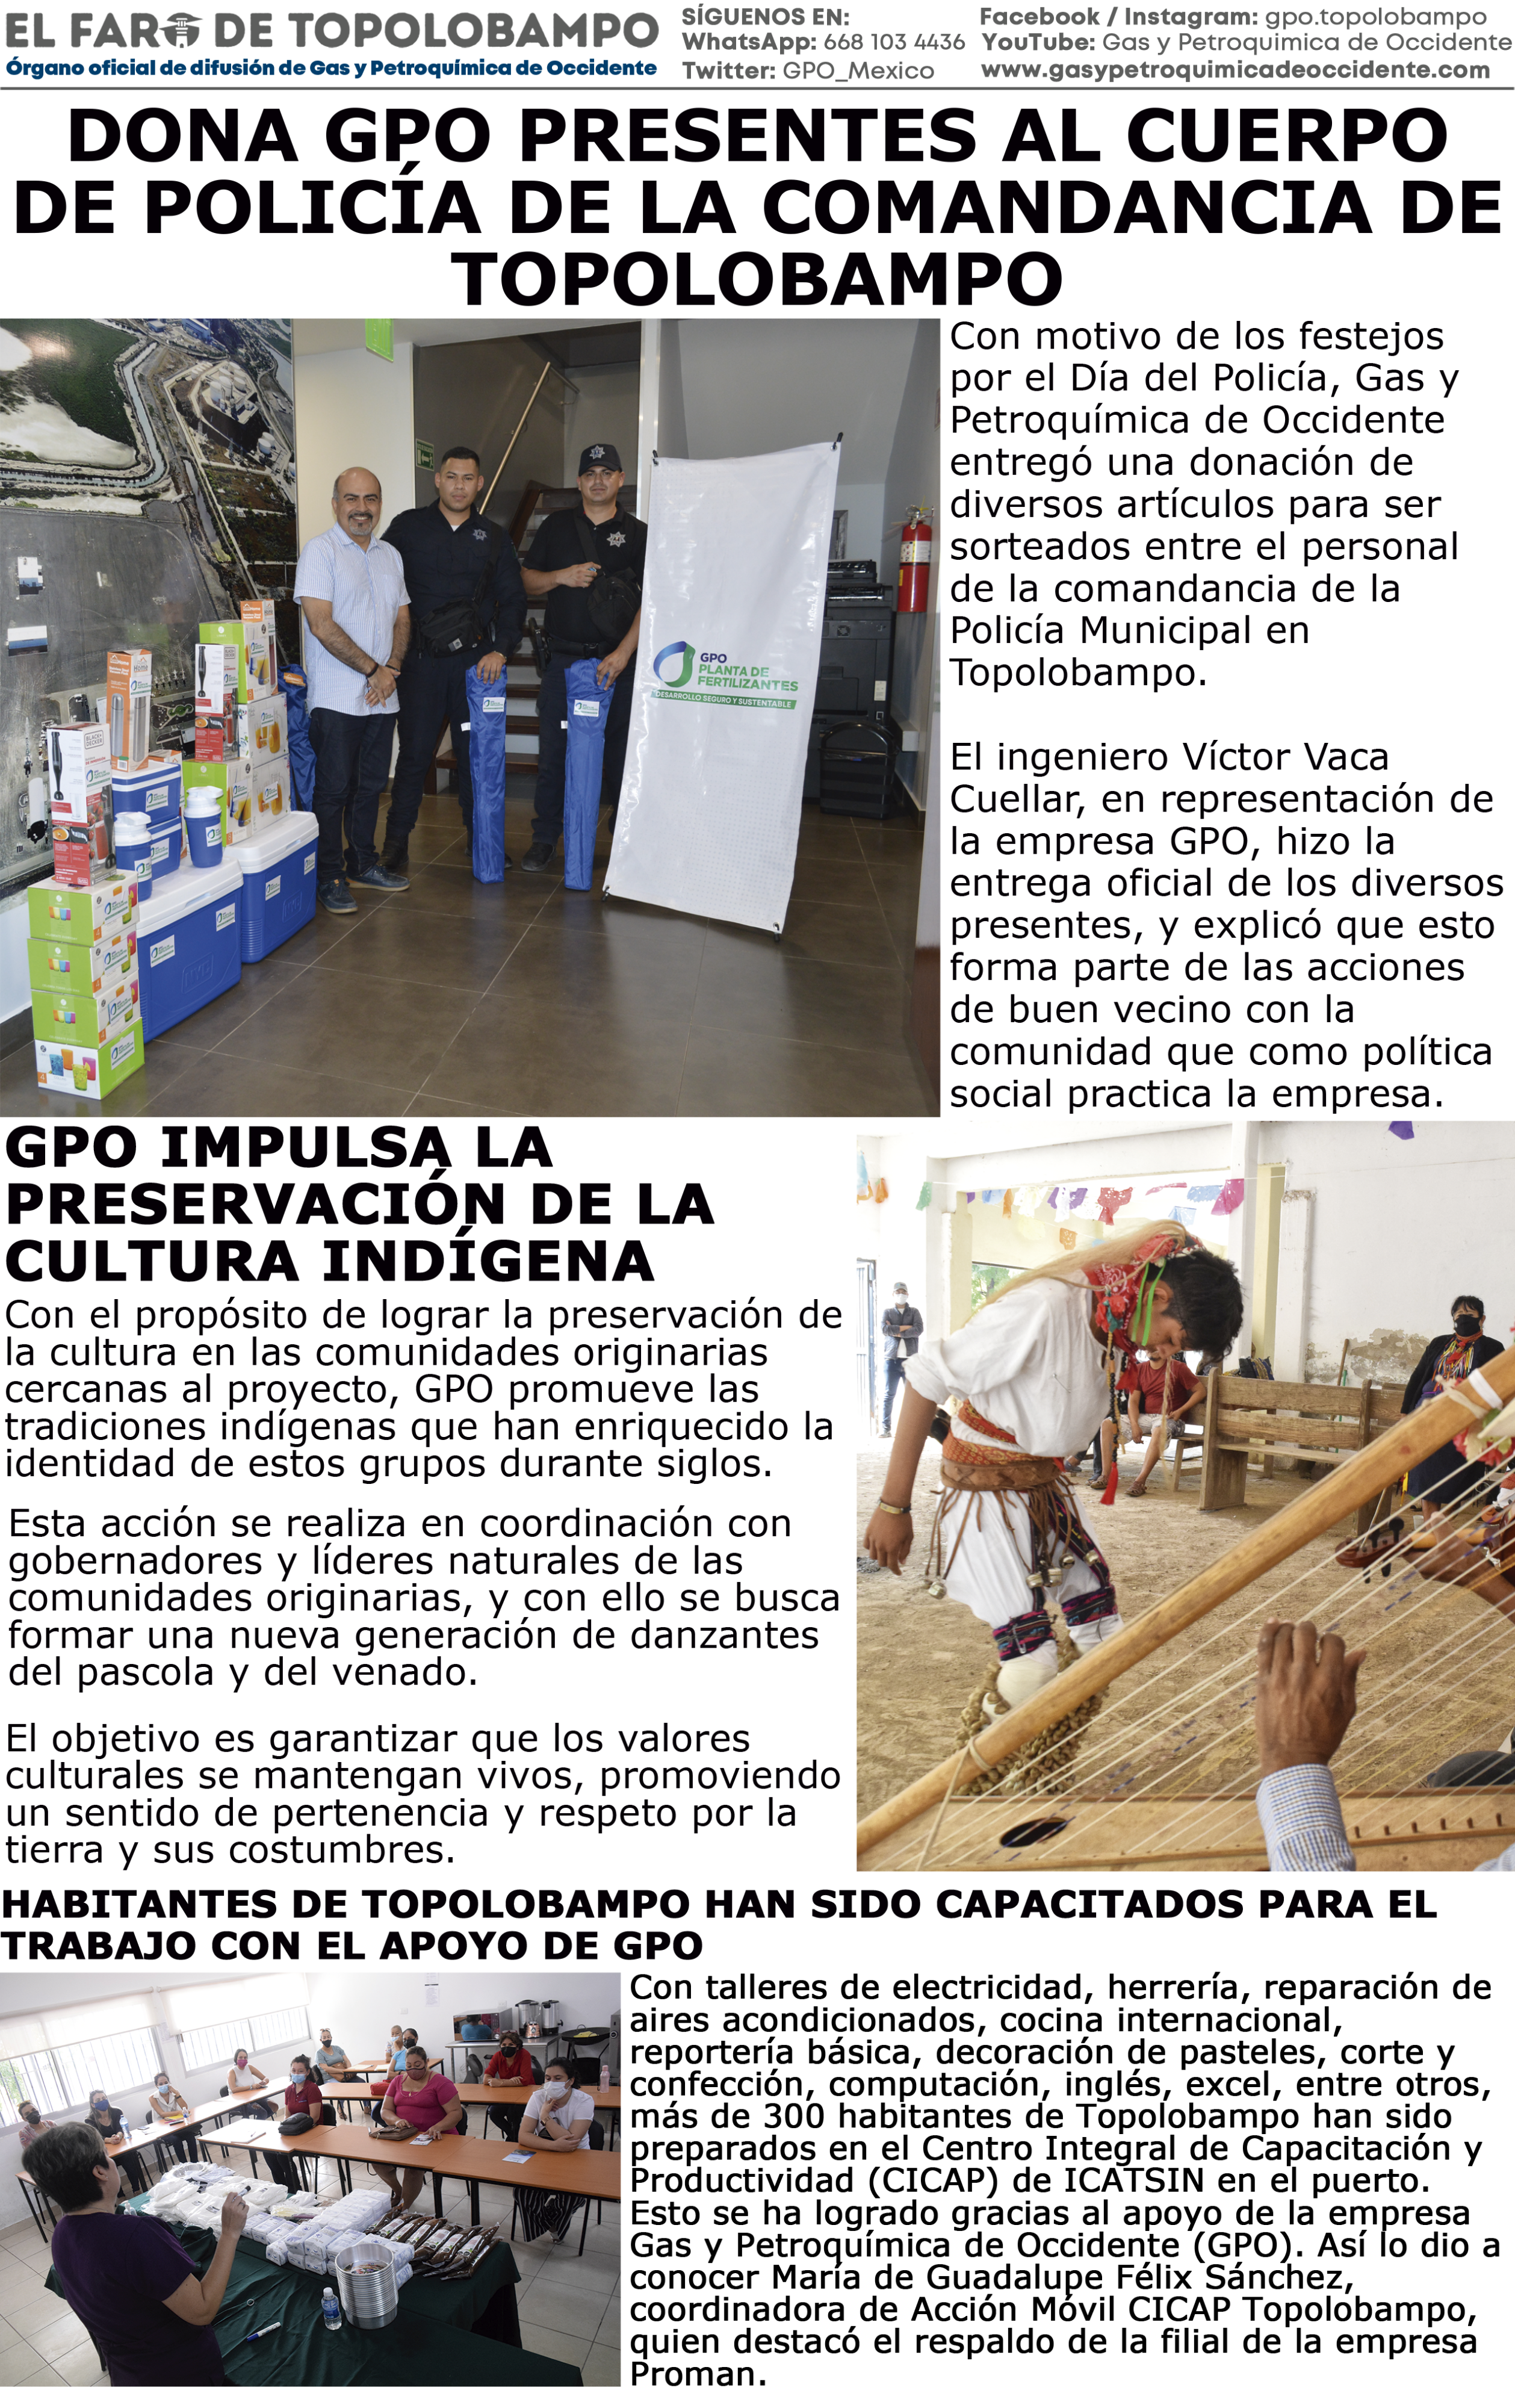 GPO - El Faro de Topolobampo - B - Español - Enero 2022